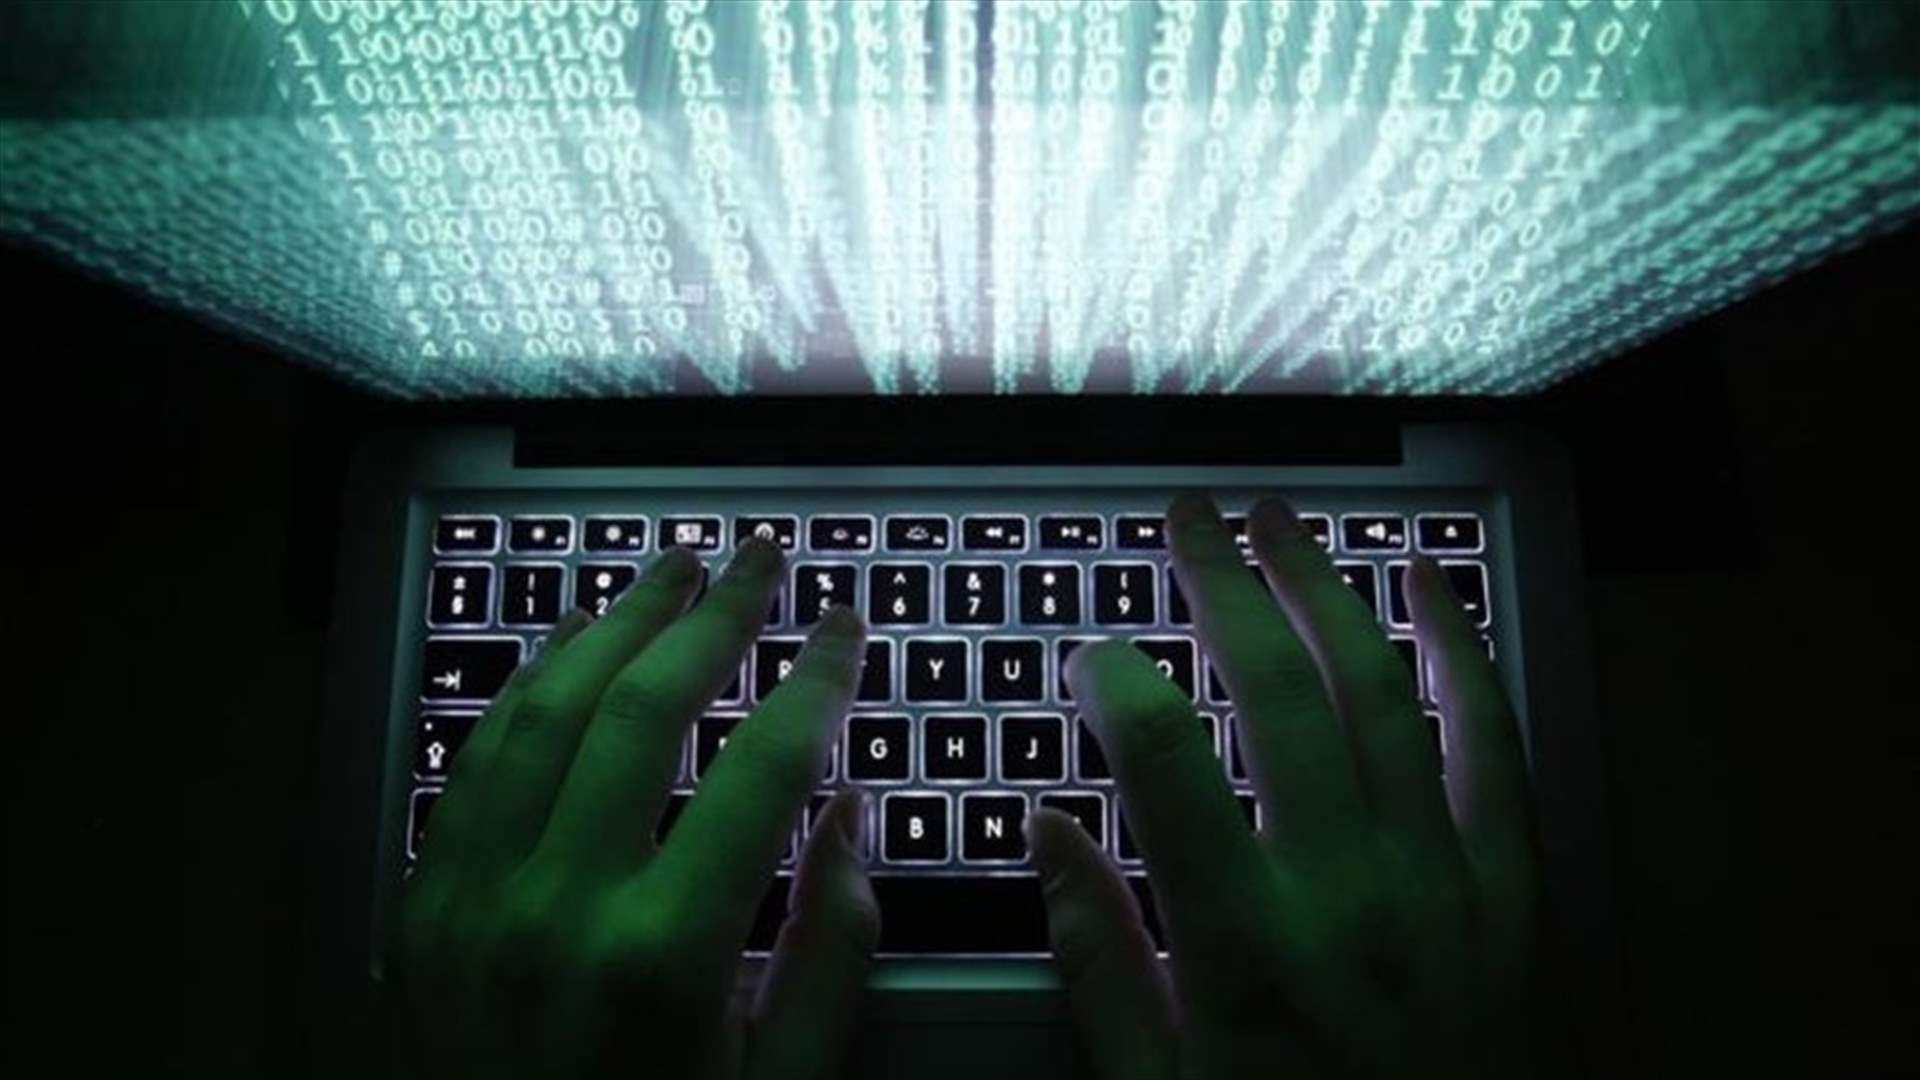 ثغرة جديدة تثير مخاوف من هجمات إلكترونية